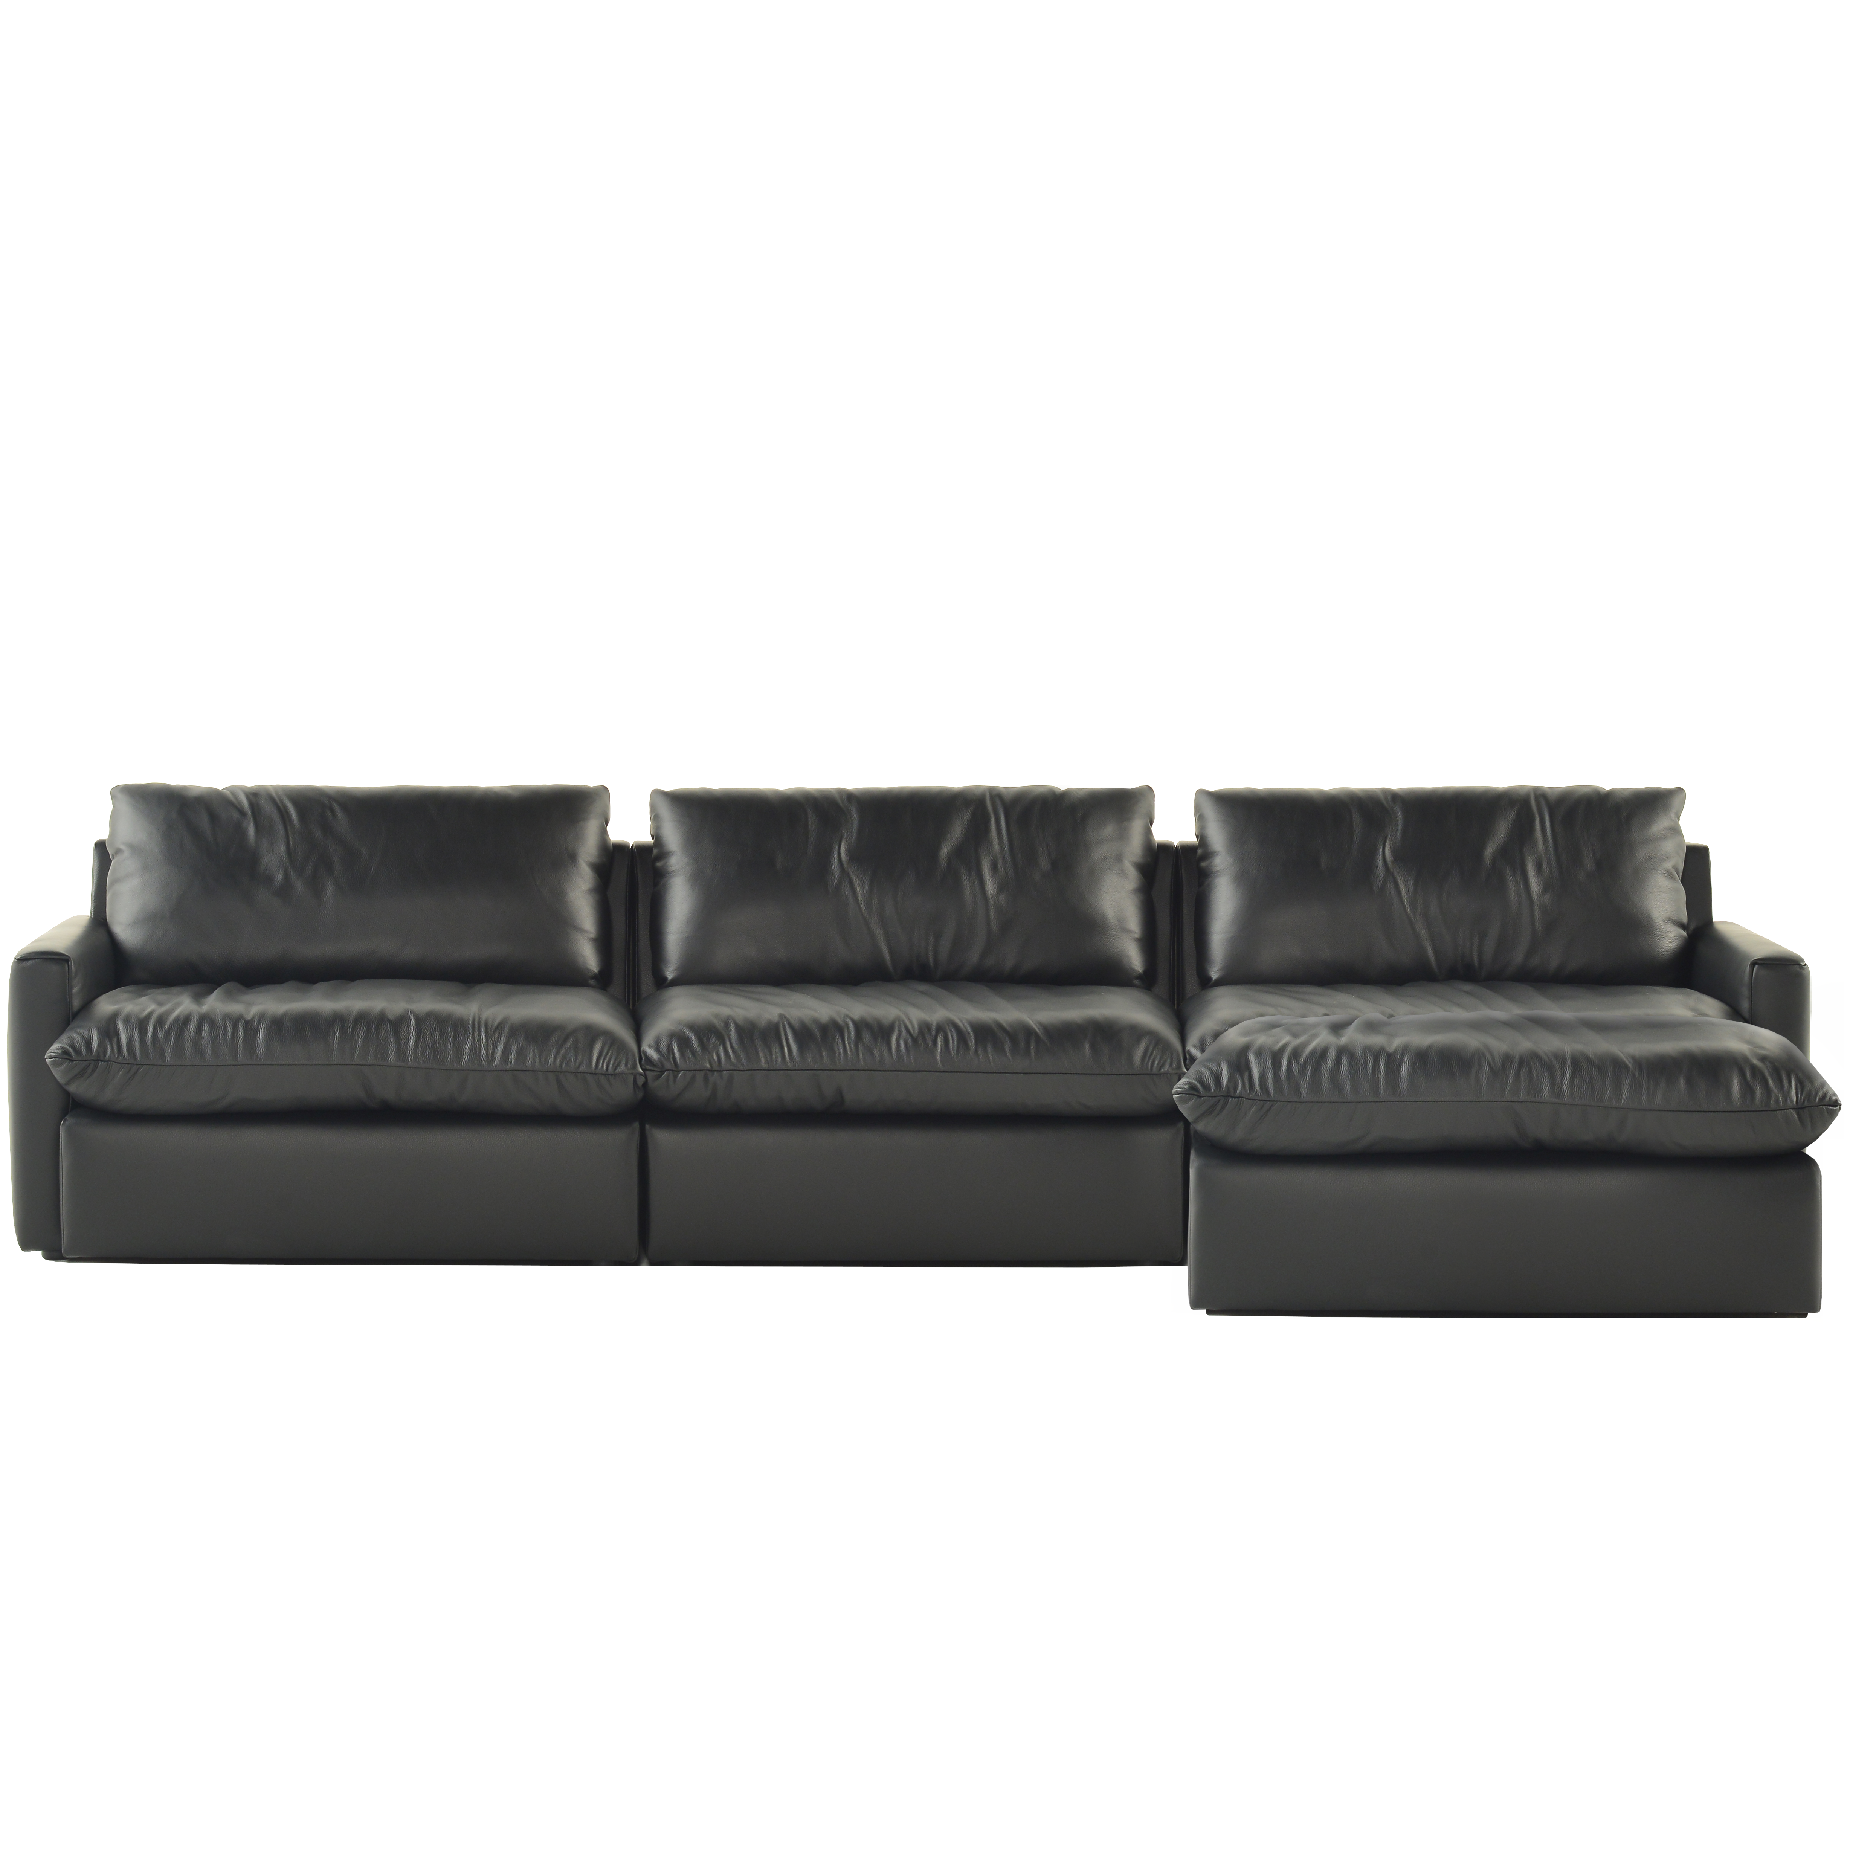 (주)도이치 DOICH ®    PEN26 modular sofa+stool 도이치 펜26 4인 모듈소파+스툴  [4주 주문제작]